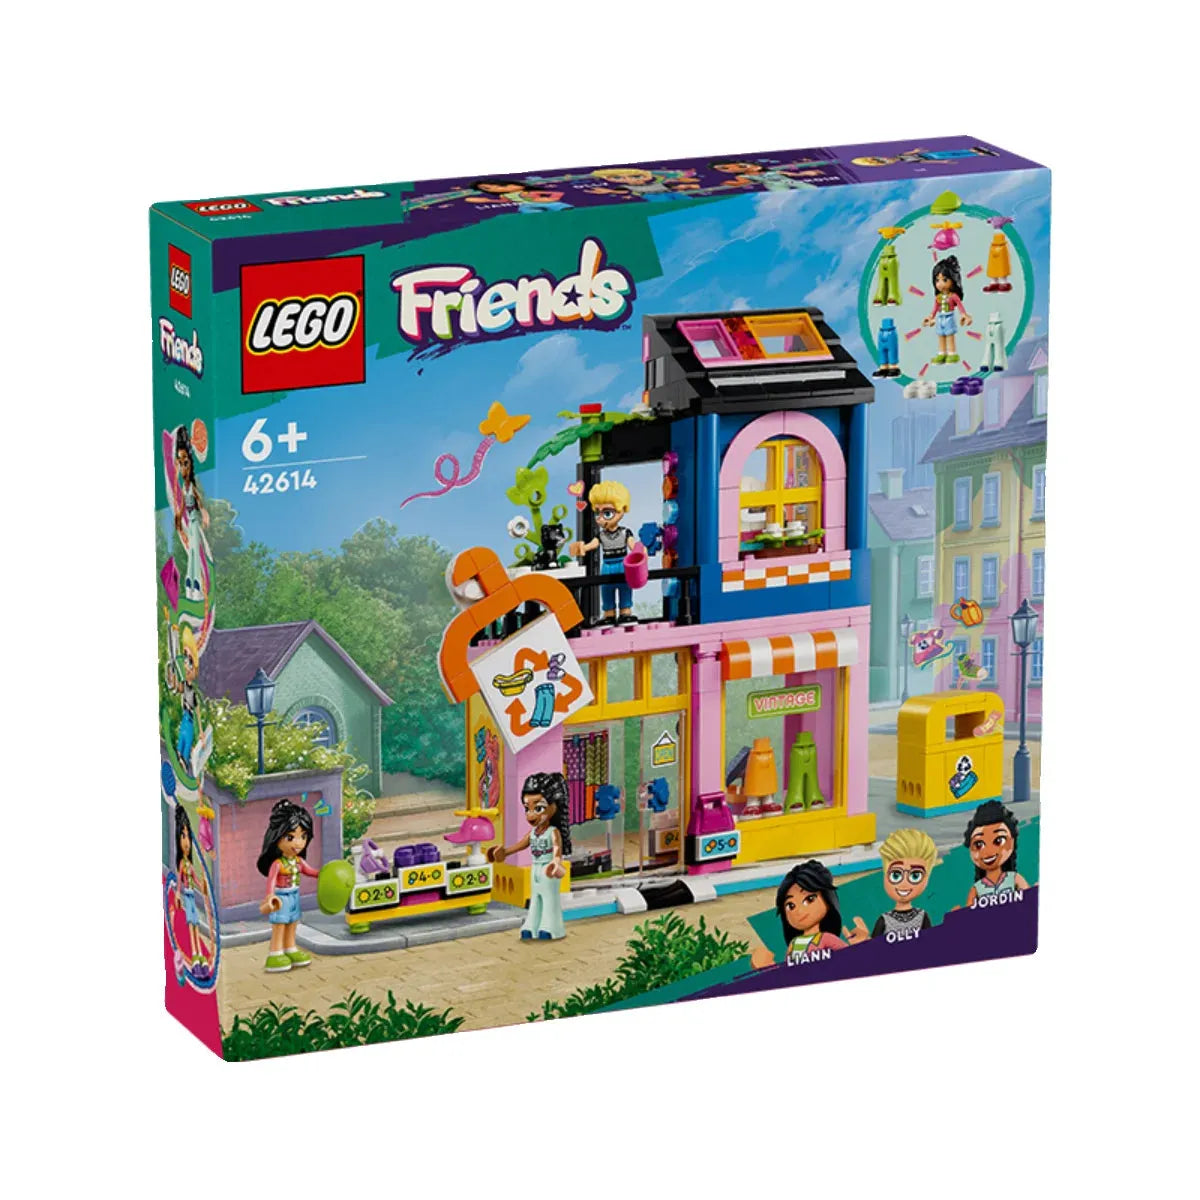 LEGO Friends 42614 Antique Renovation Bureau Male And Female Puzzle Match